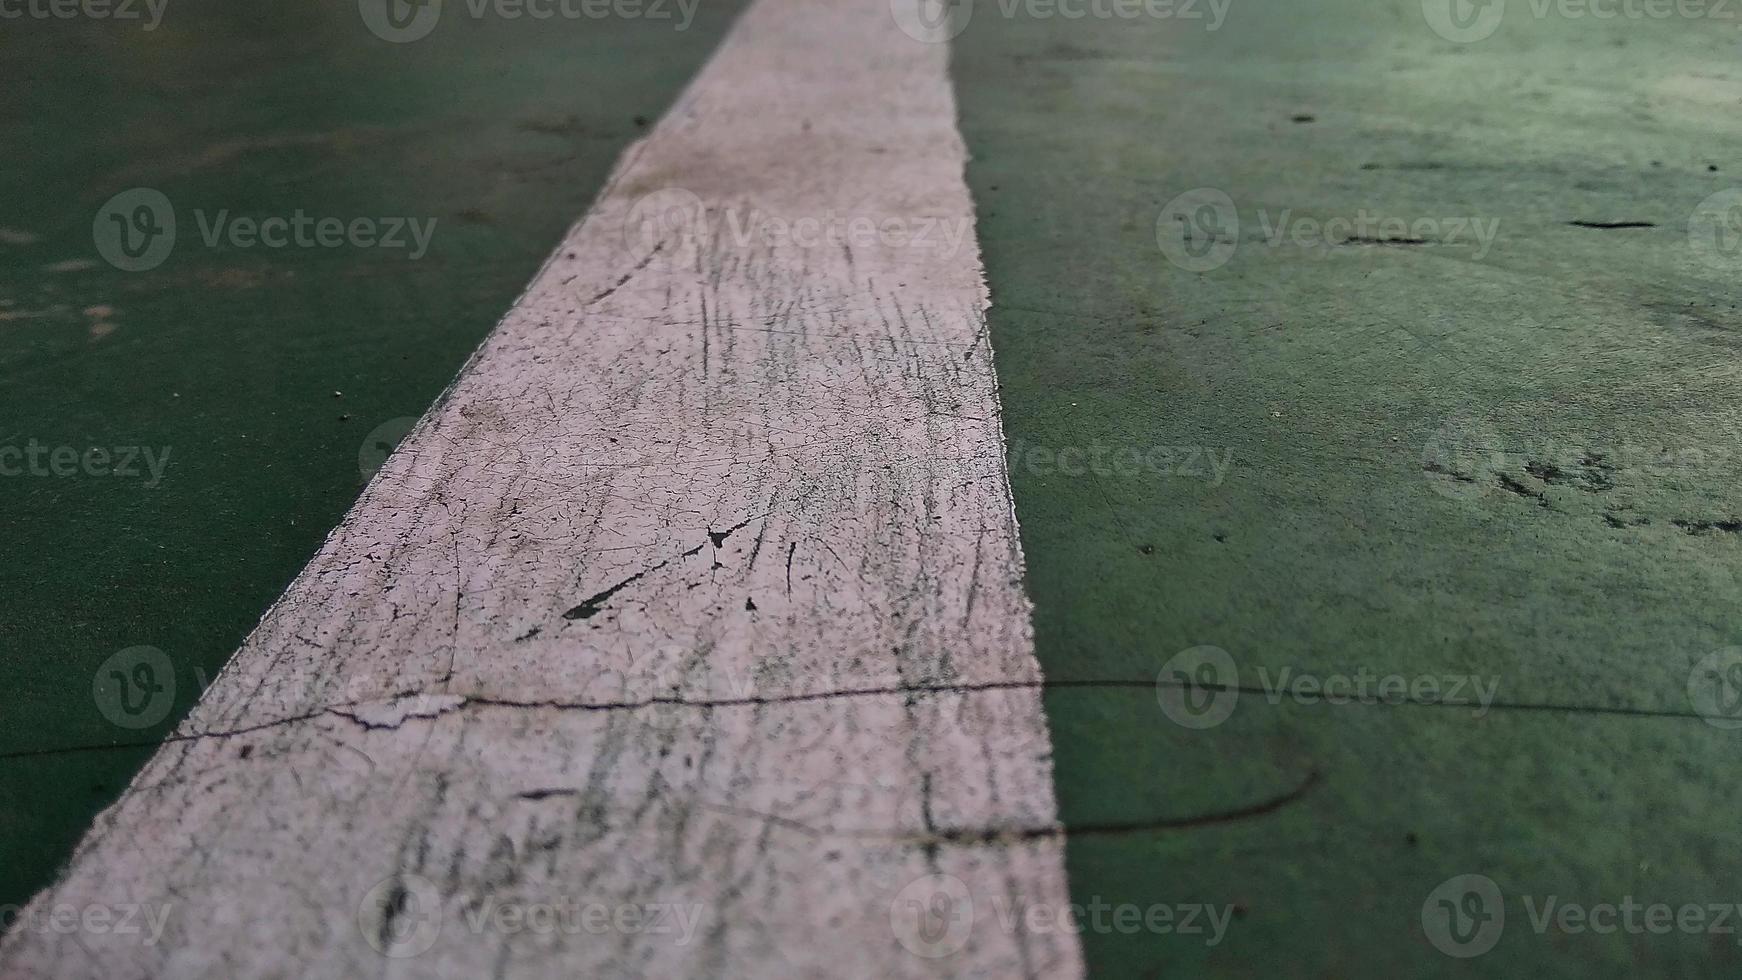 närbild av en sprucken-vit linje ritad på ett grönt trasigt golv på offentlig idrottsplats. foto